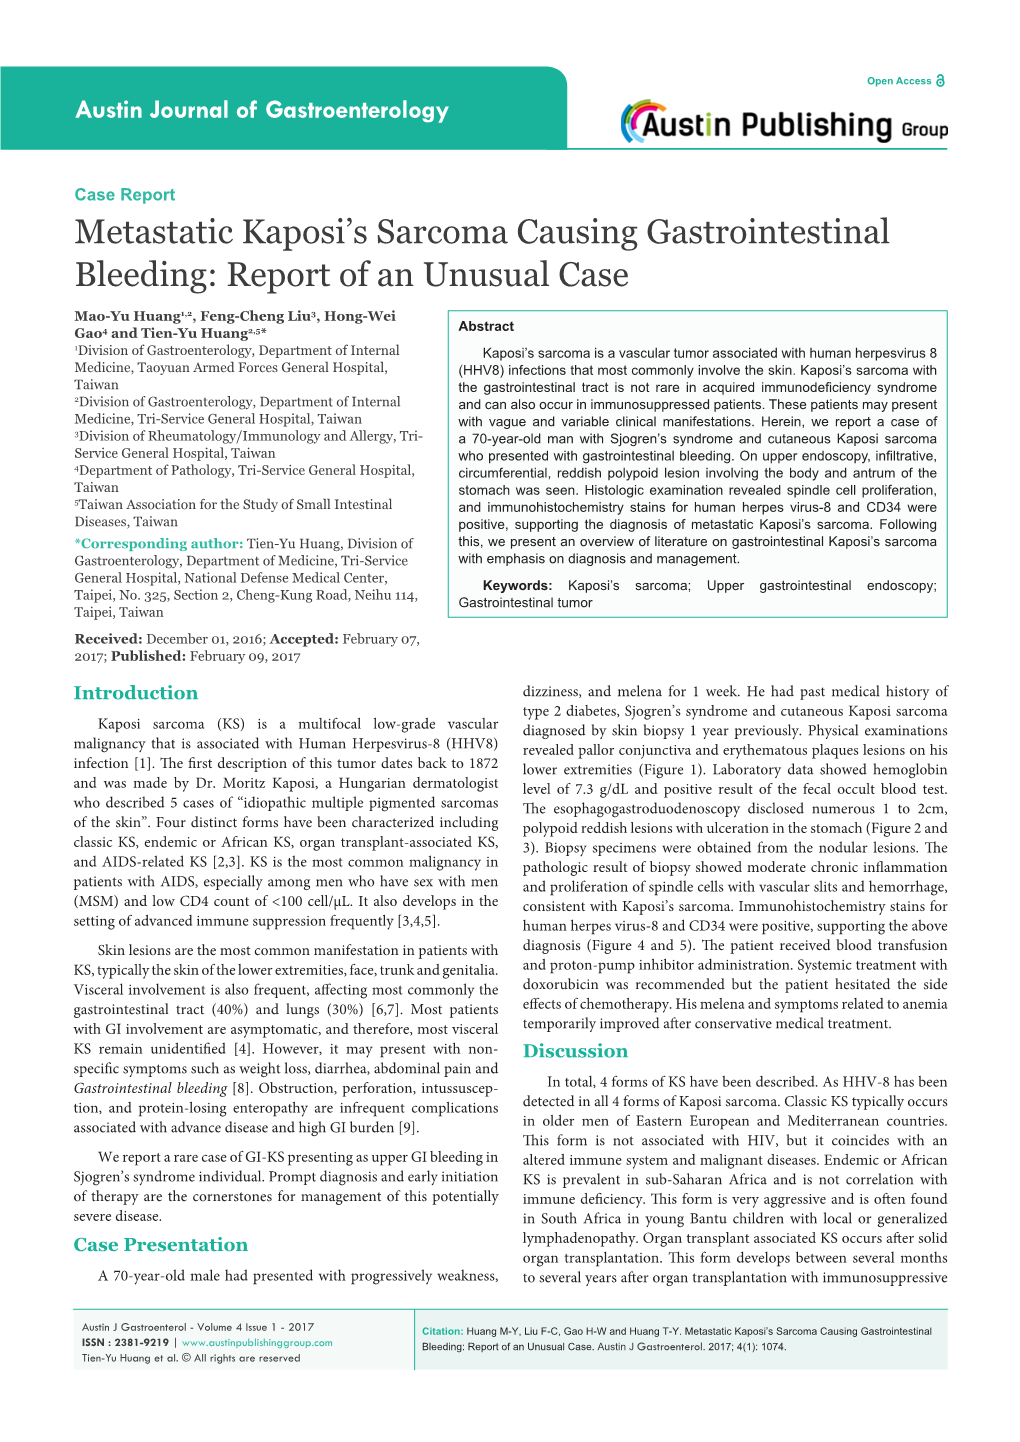 Metastatic Kaposi's Sarcoma Causing Gastrointestinal Bleeding